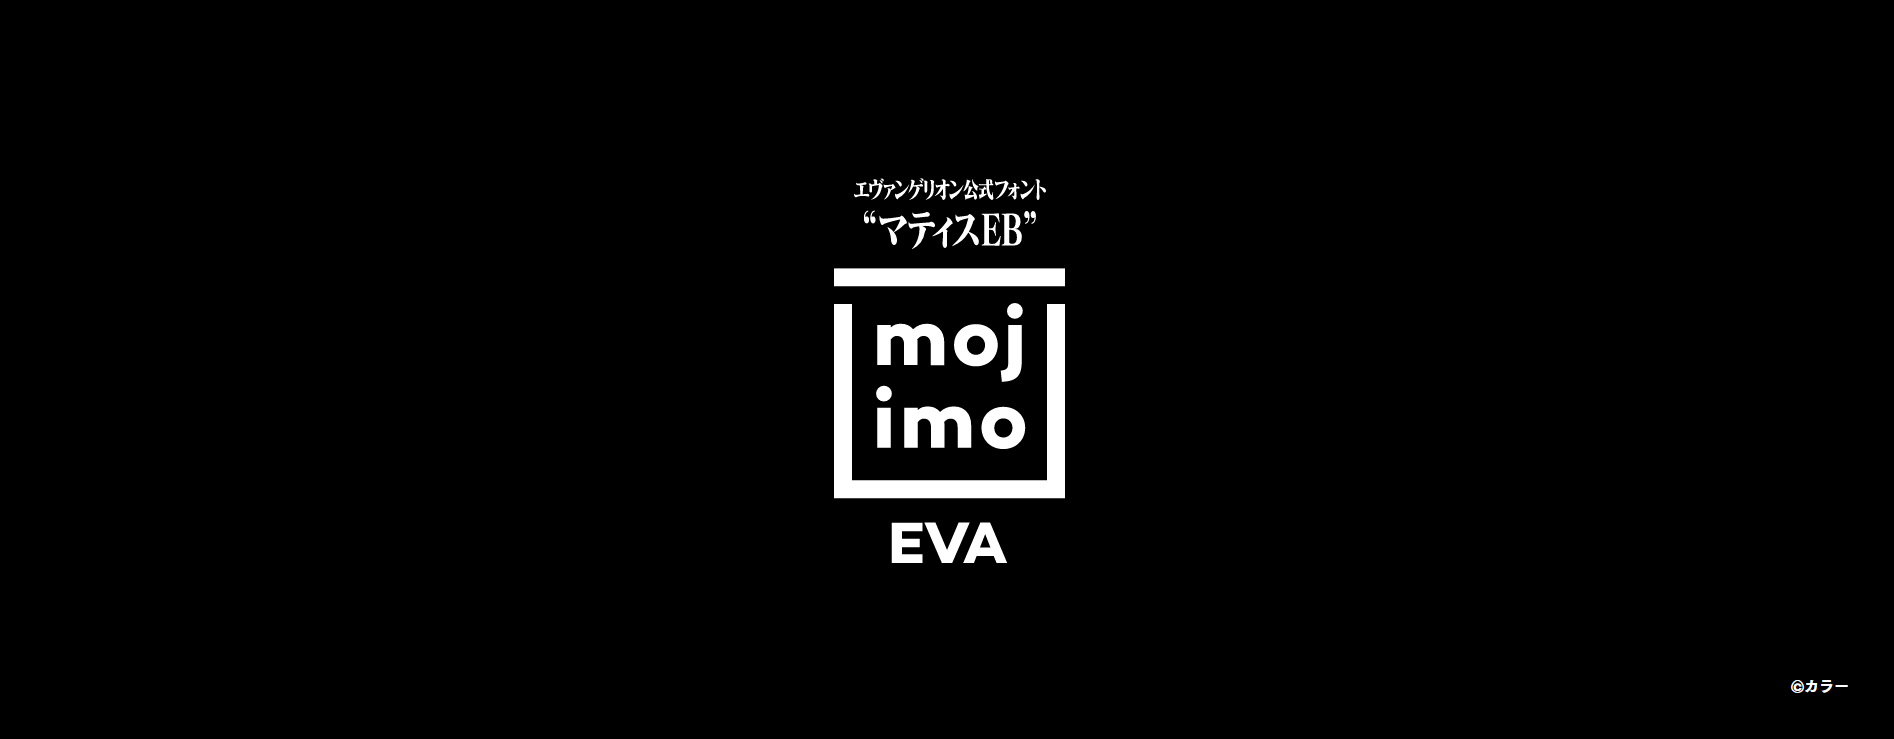 “エヴァフォント”でお馴染みの『マティス-EB』が、mojimoで登場 